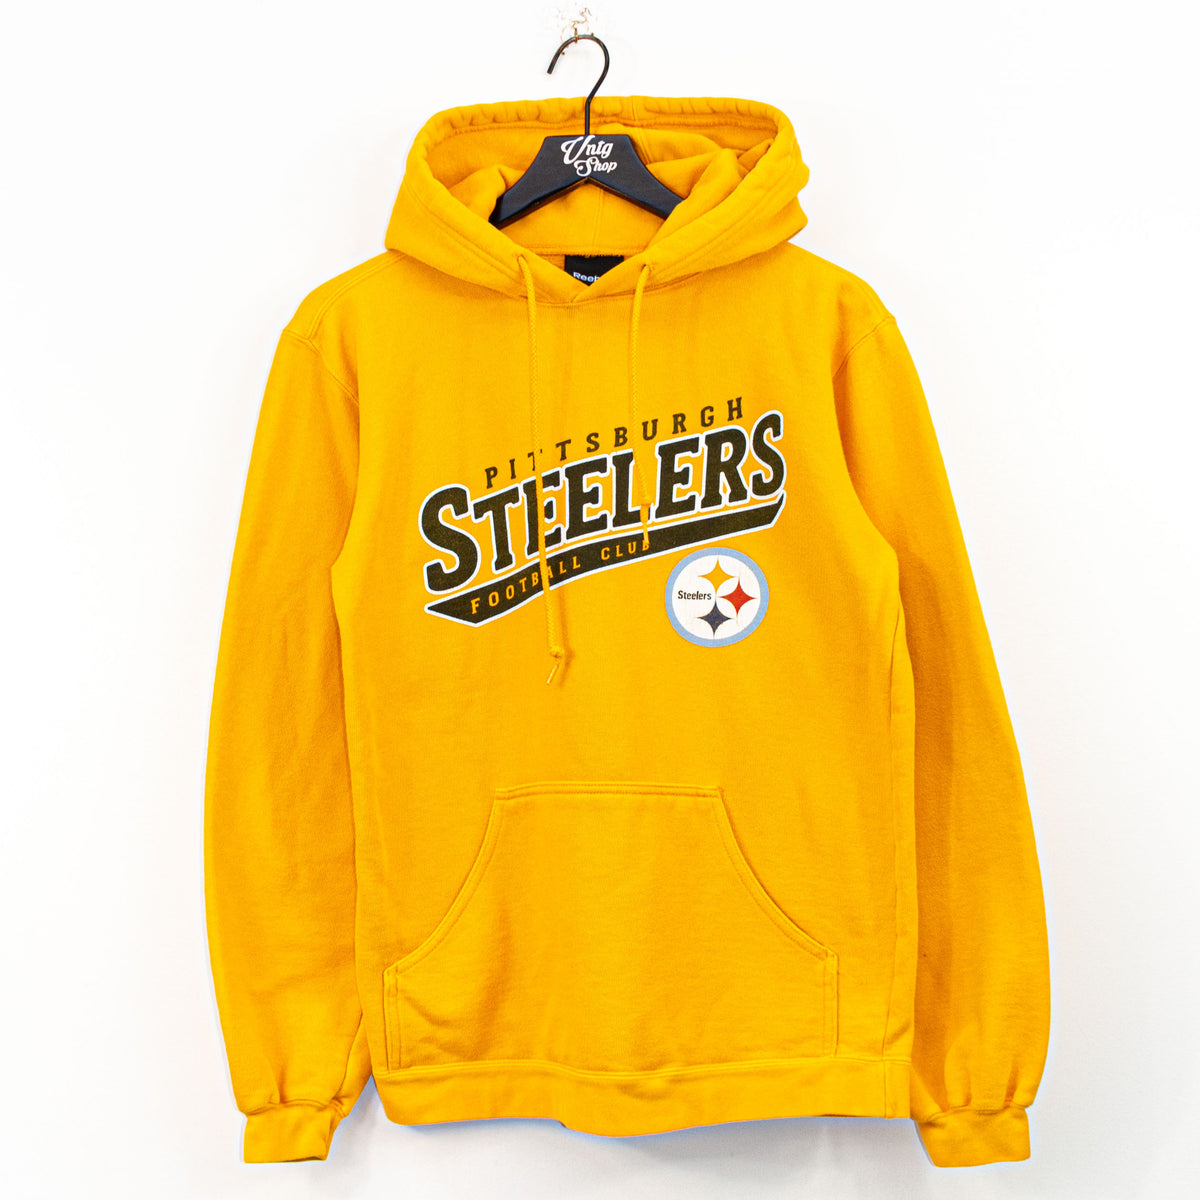 steelers football hoodie